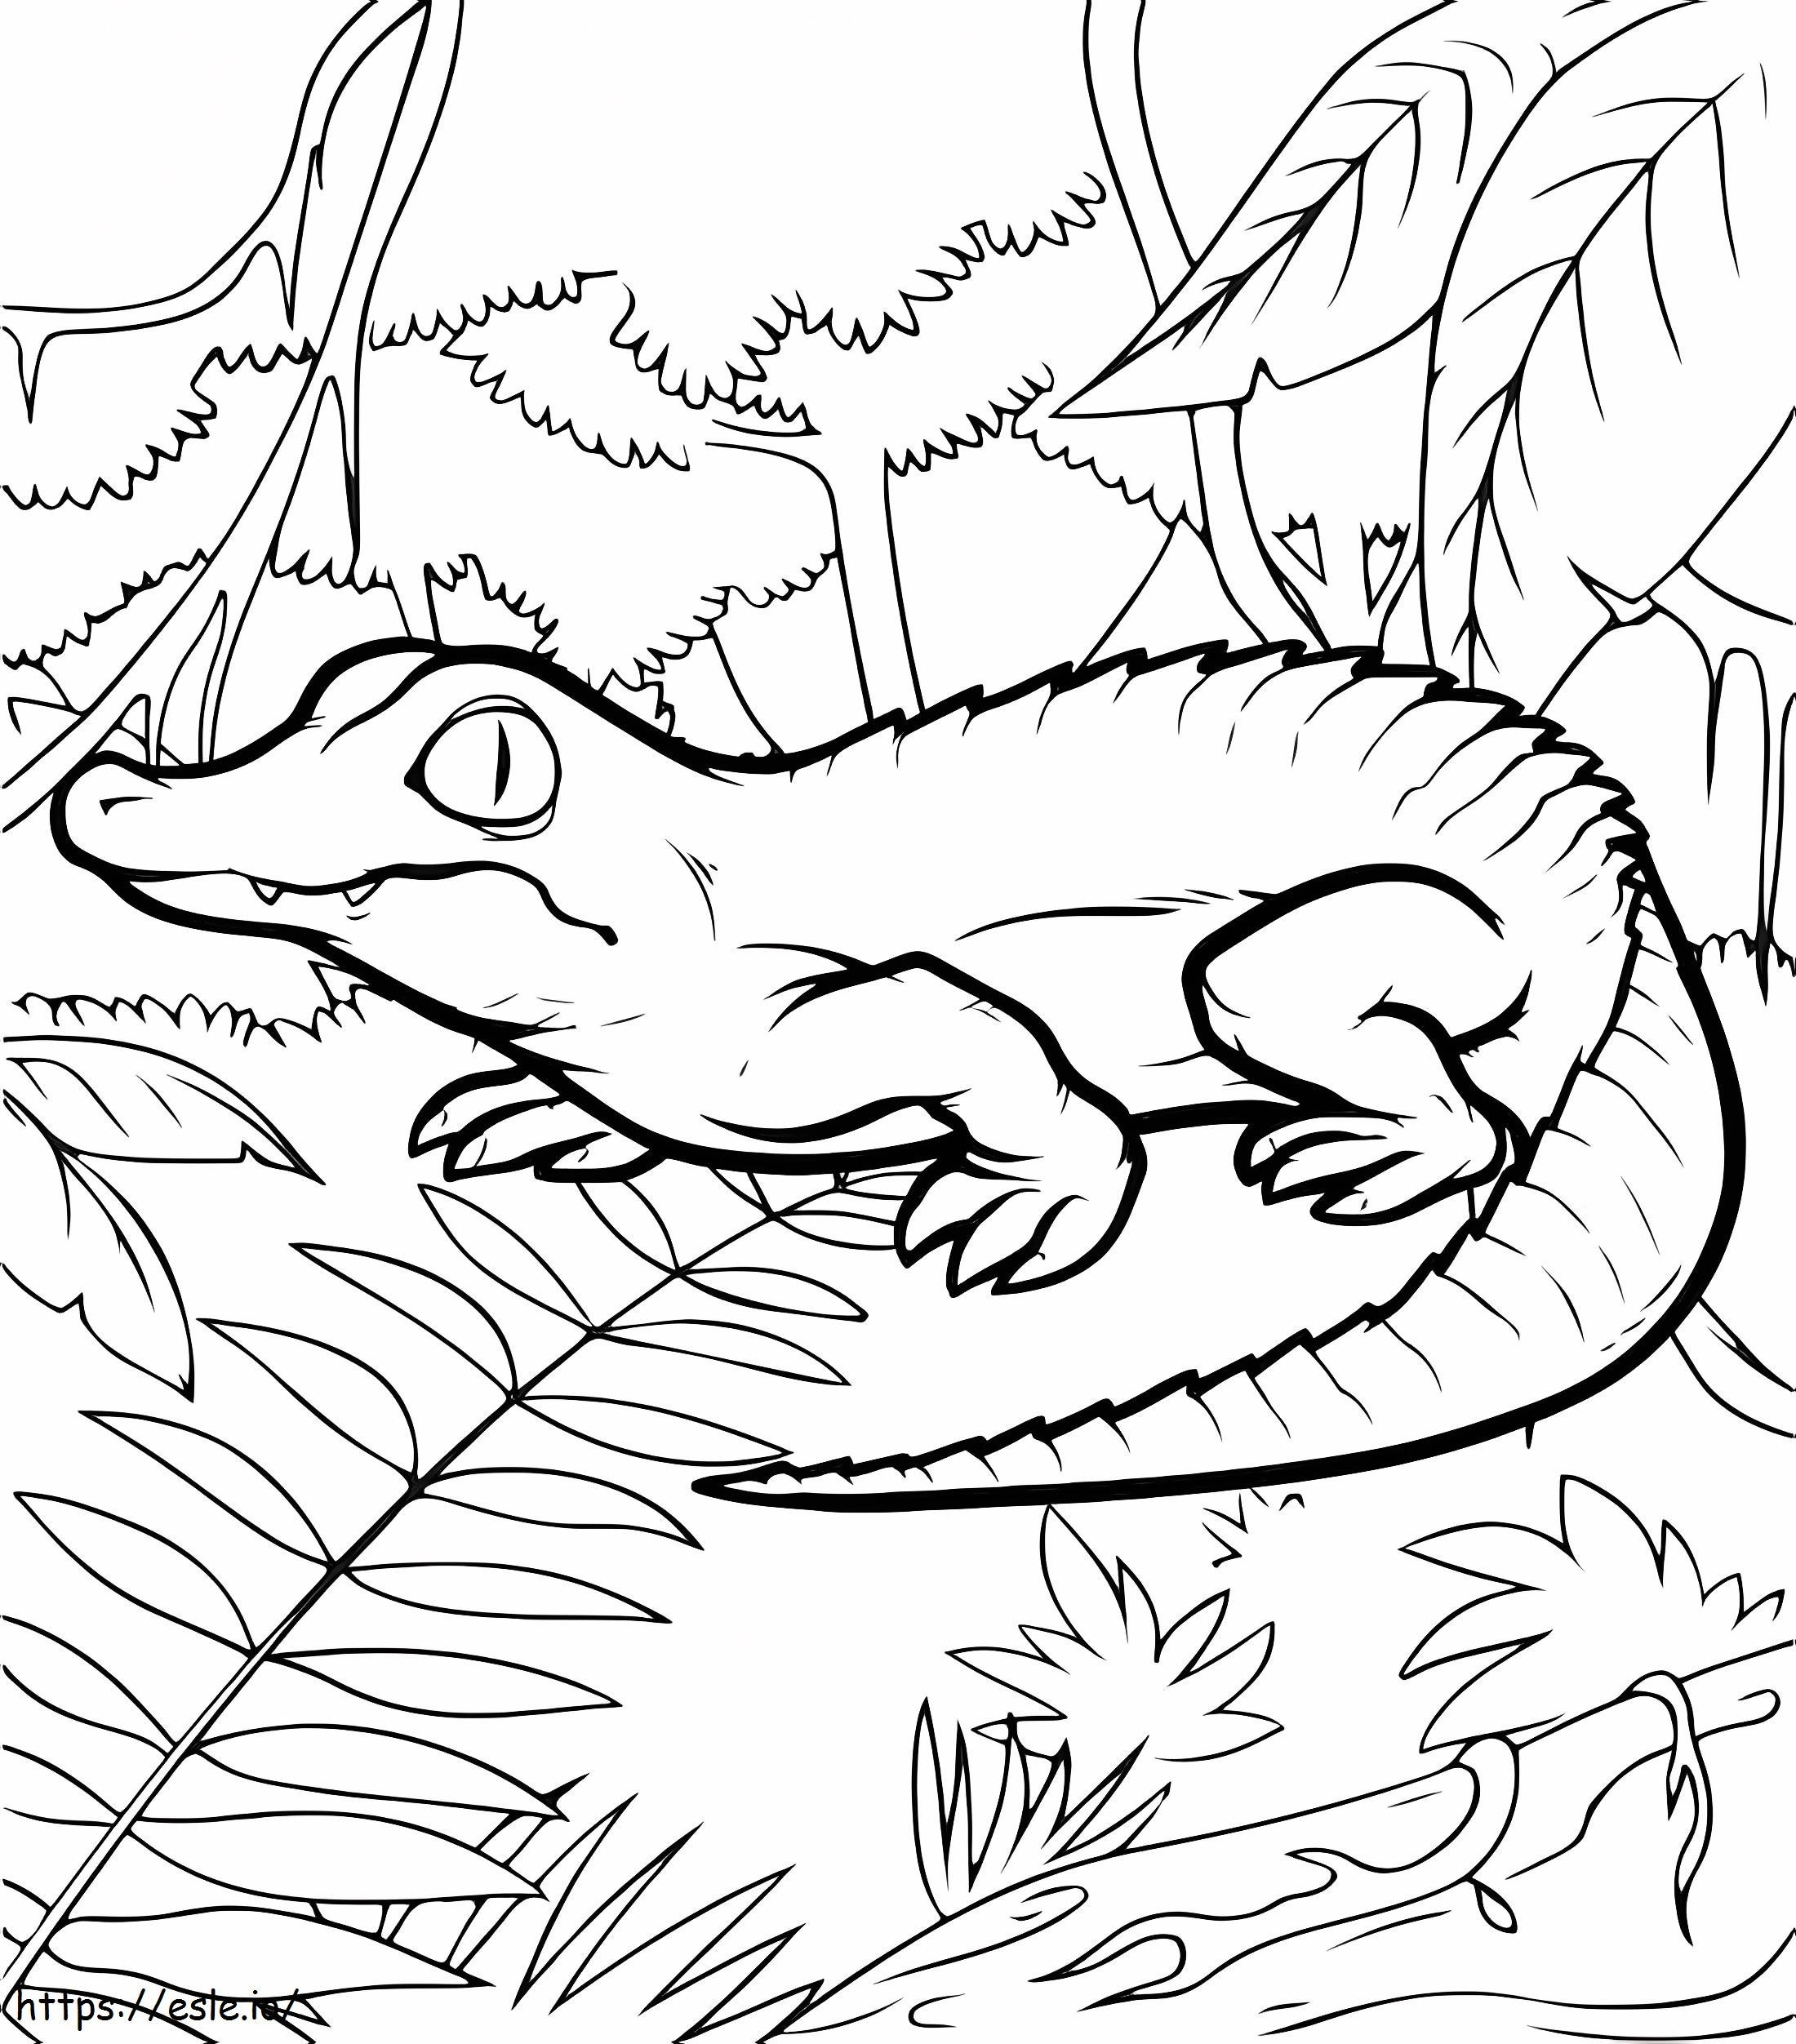 Krokodil In Het Bos kleurplaat kleurplaat